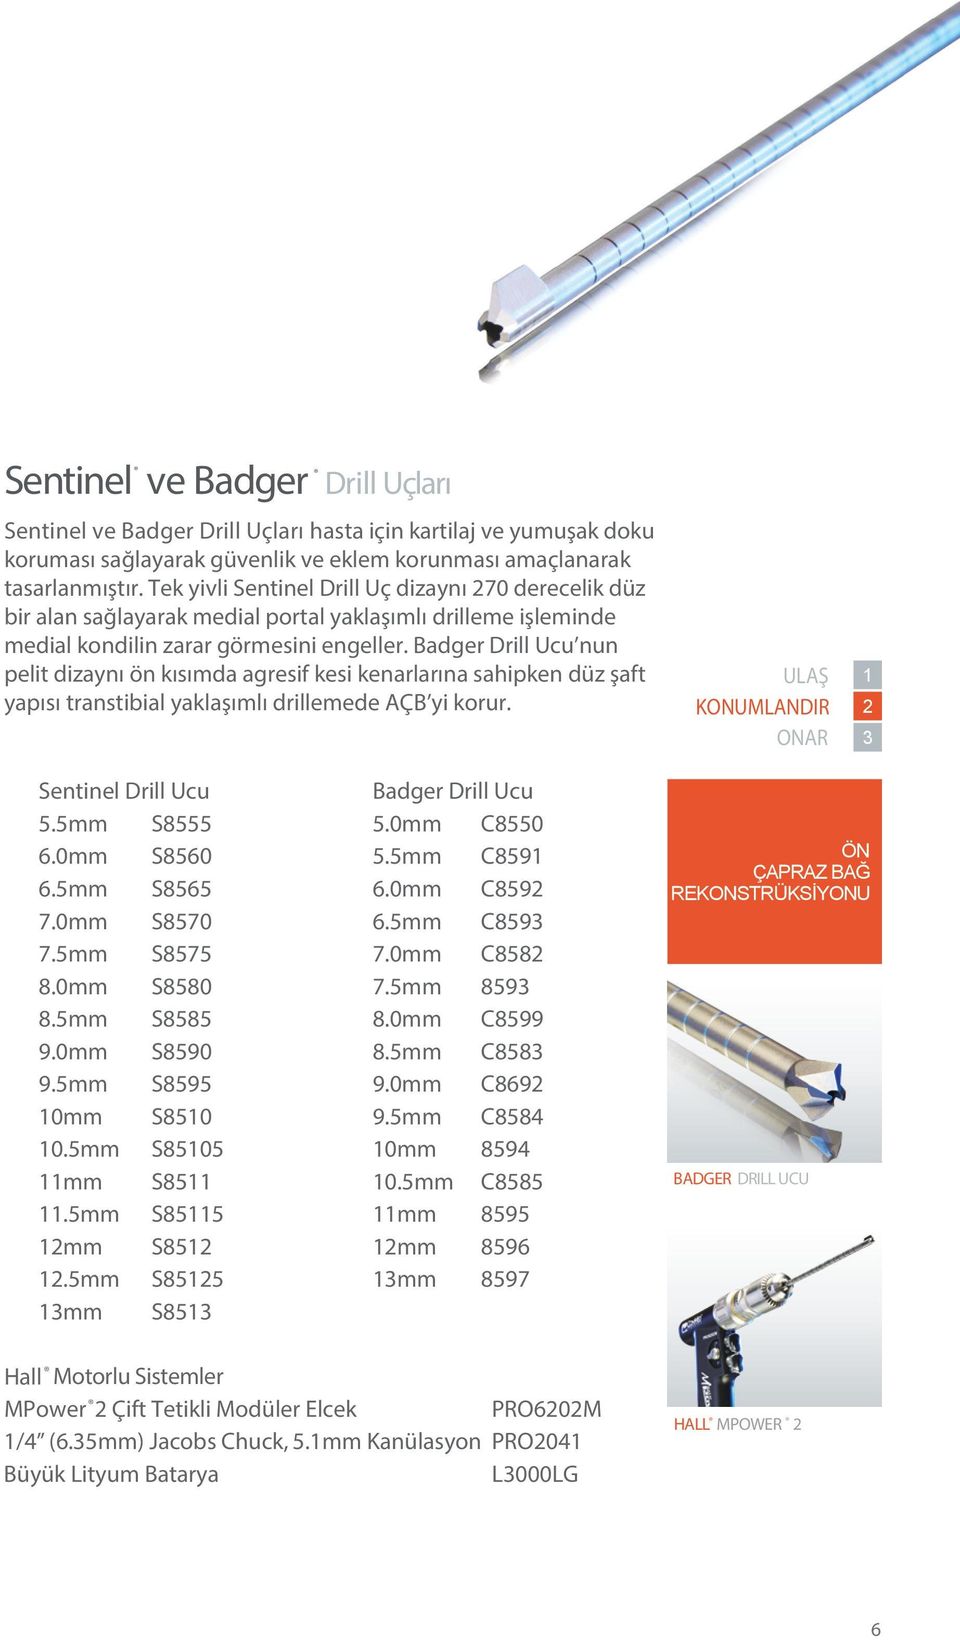 Badger Drill Ucu nun pelit dizaynı ön kısımda agresif kesi kenarlarına sahipken düz şaft yapısı transtibial yaklaşımlı drillemede AÇB yi korur. 1 Sentinel Drill Ucu Badger Drill Ucu 5.5mm S8555 5.